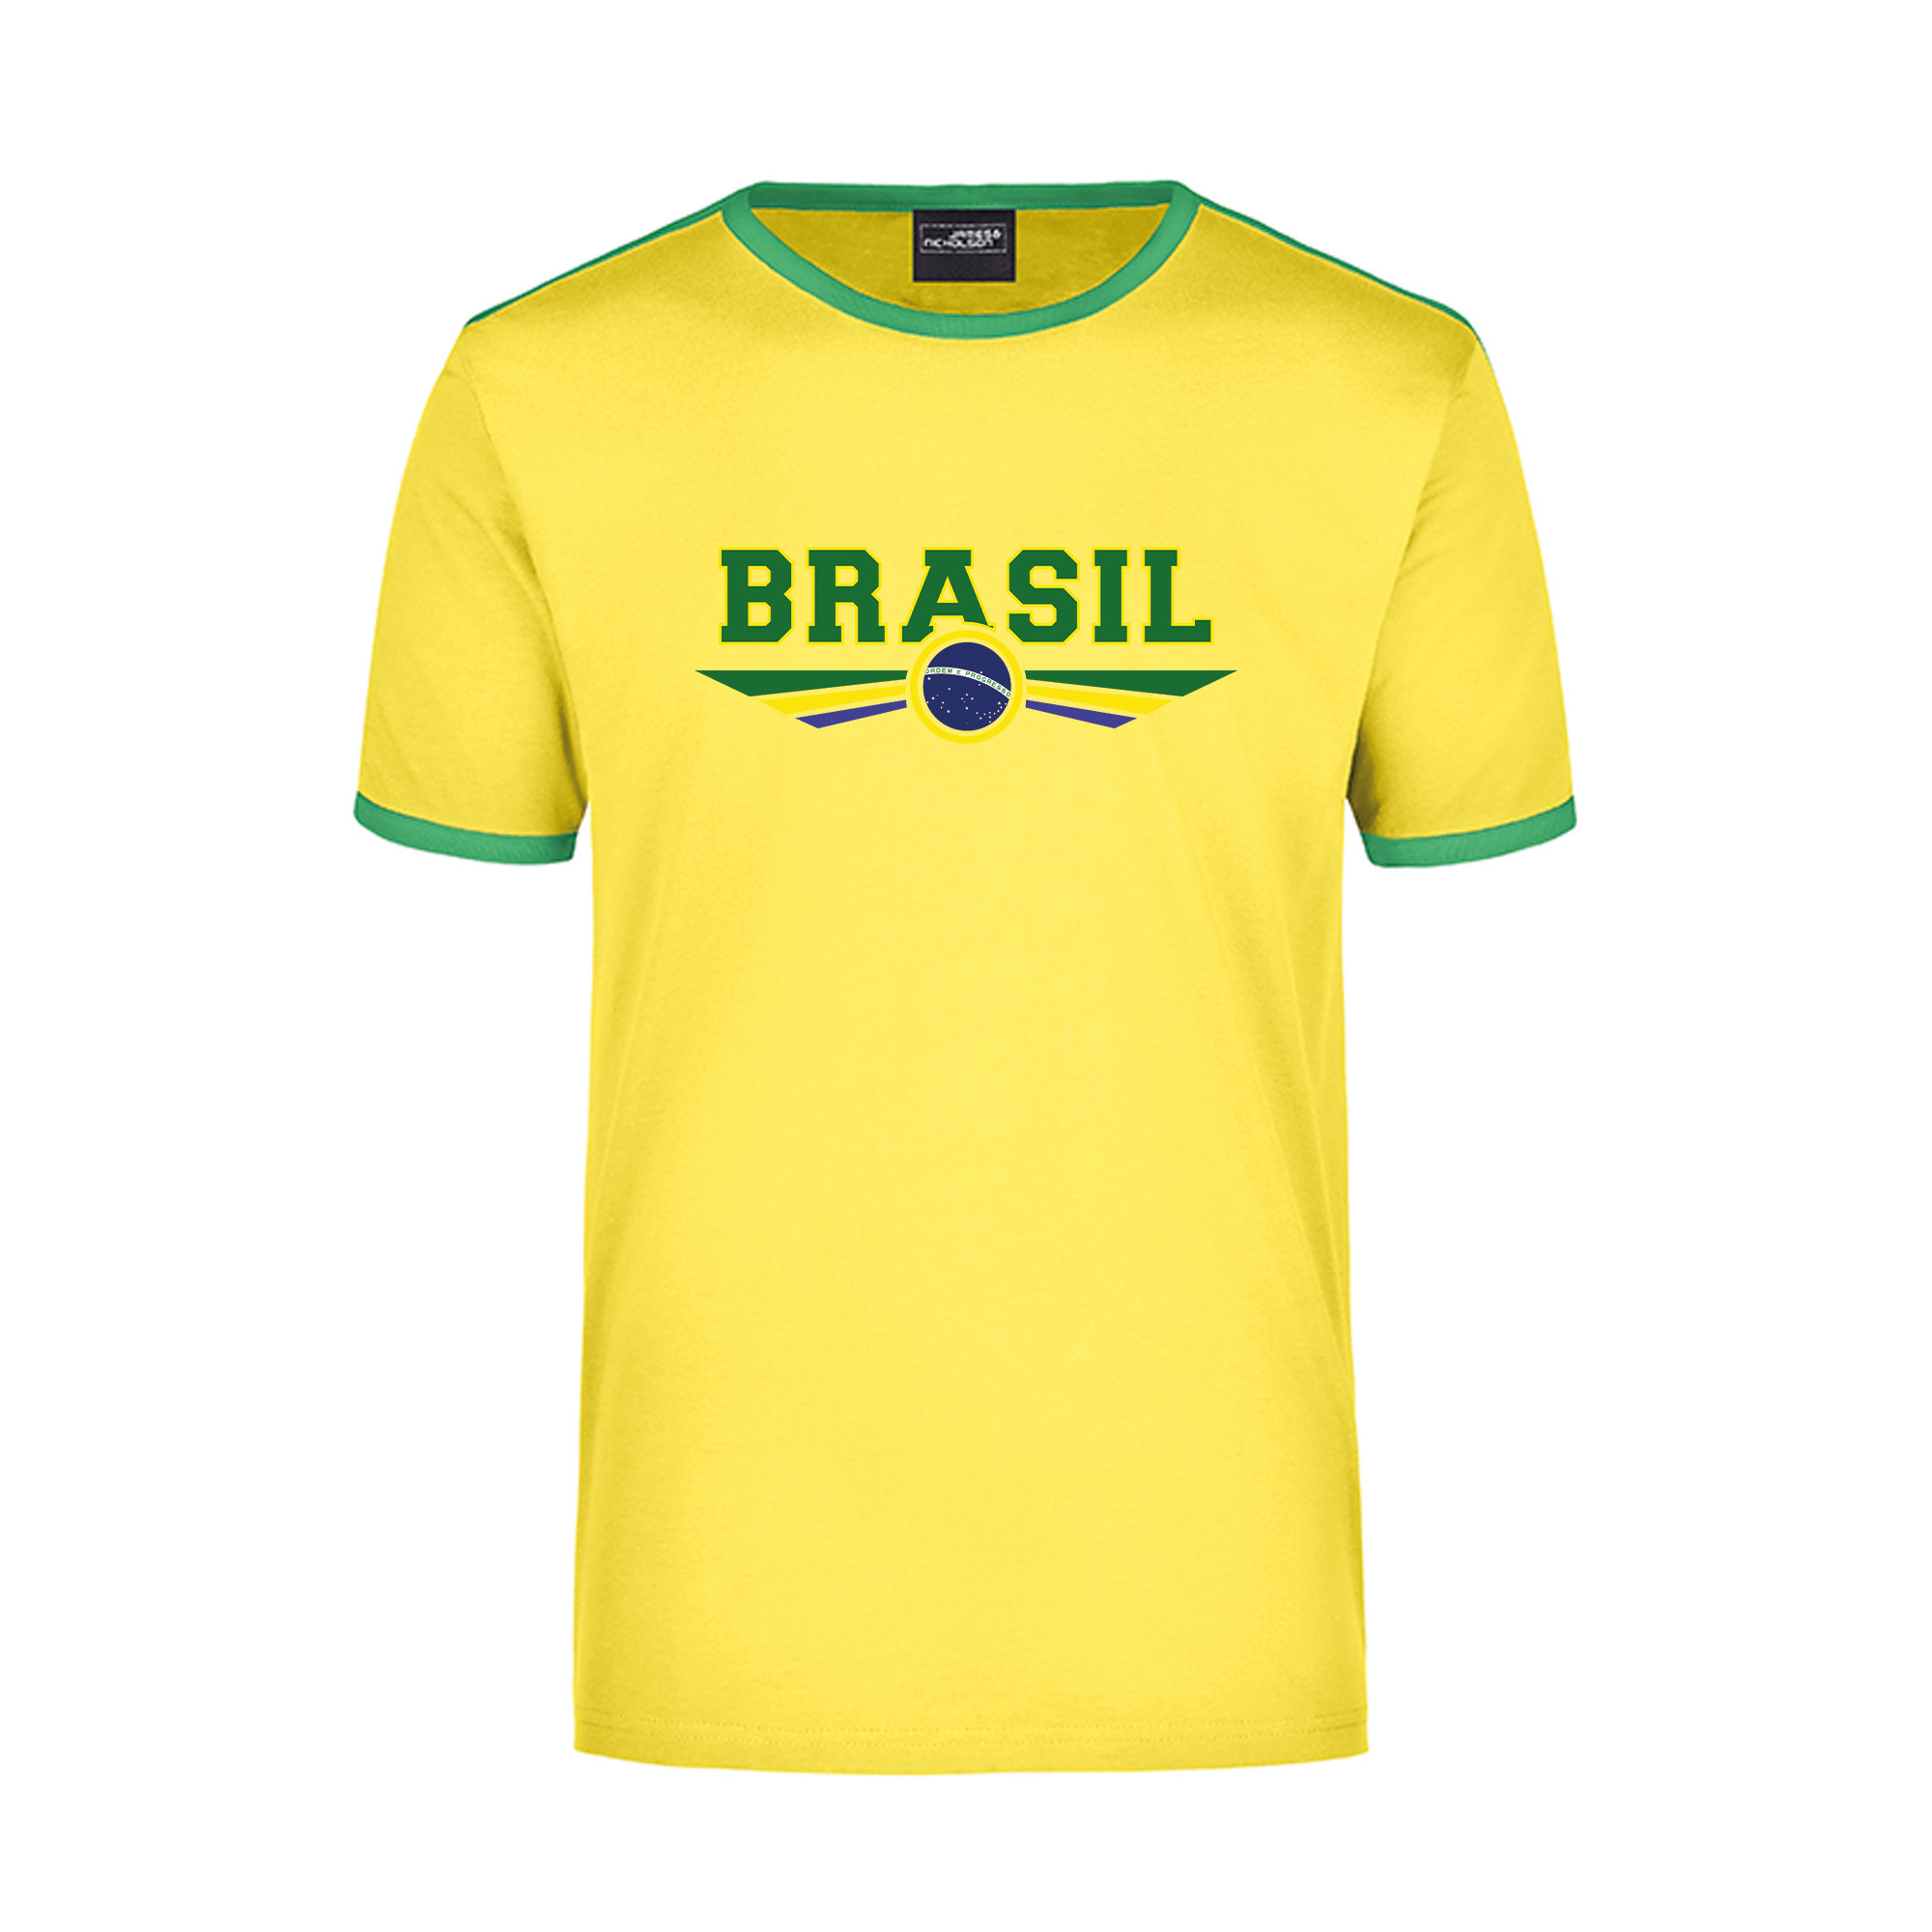 Brasil geel - groen ringer landen t-shirt logo met vlag Brazilie voor heren